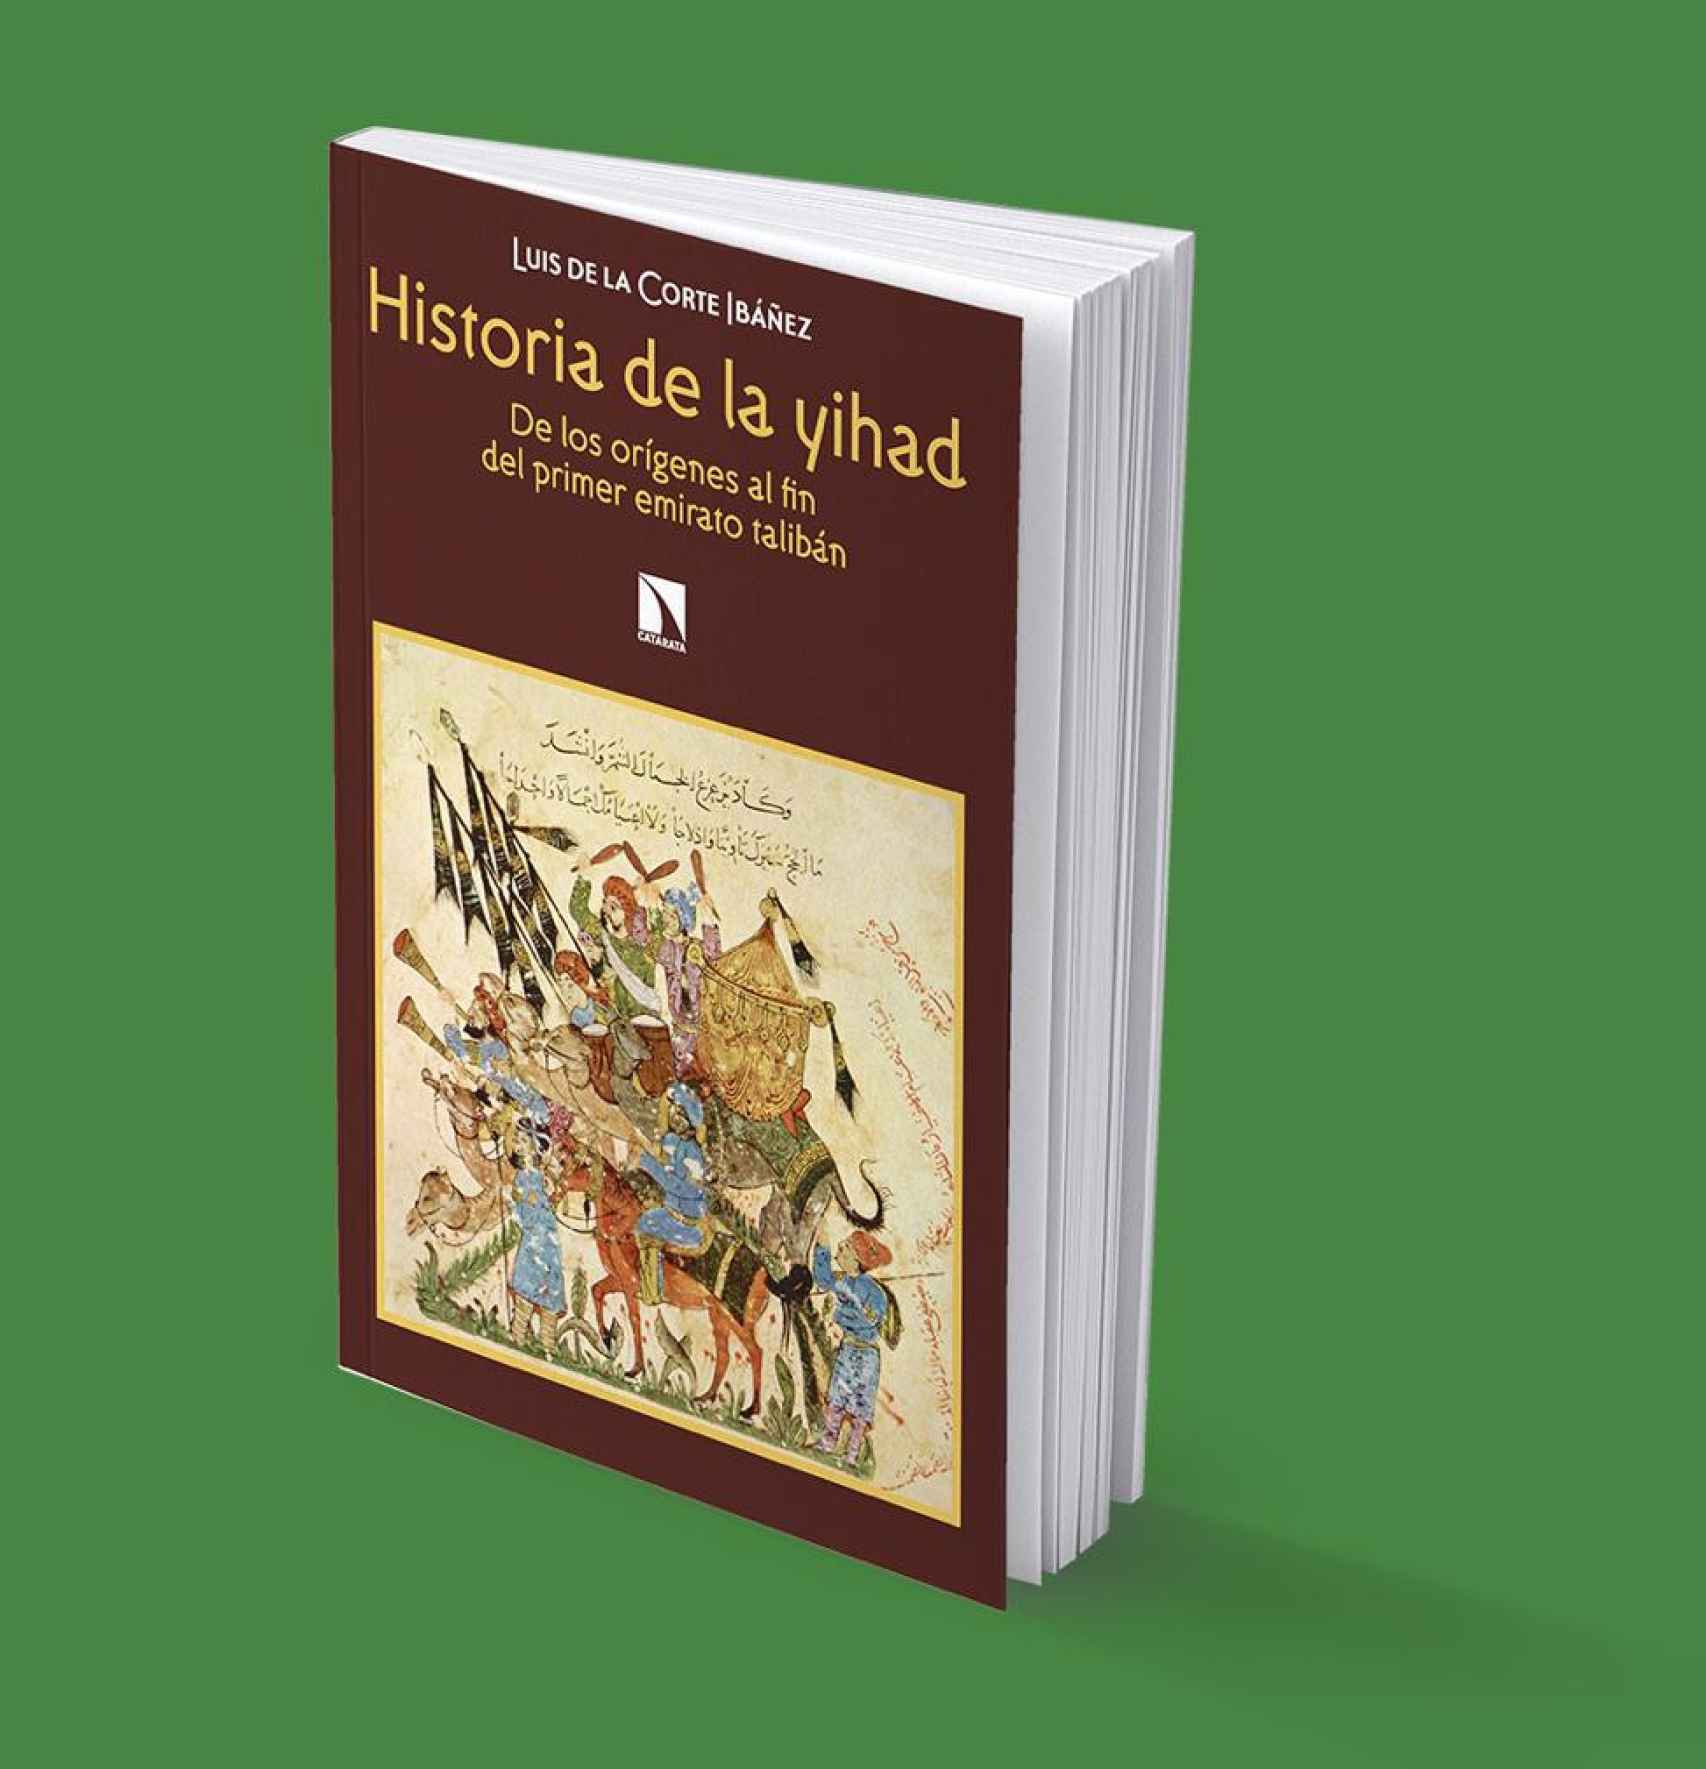 El último libro de Luis de la Corte, sobre la historia de la yihad.